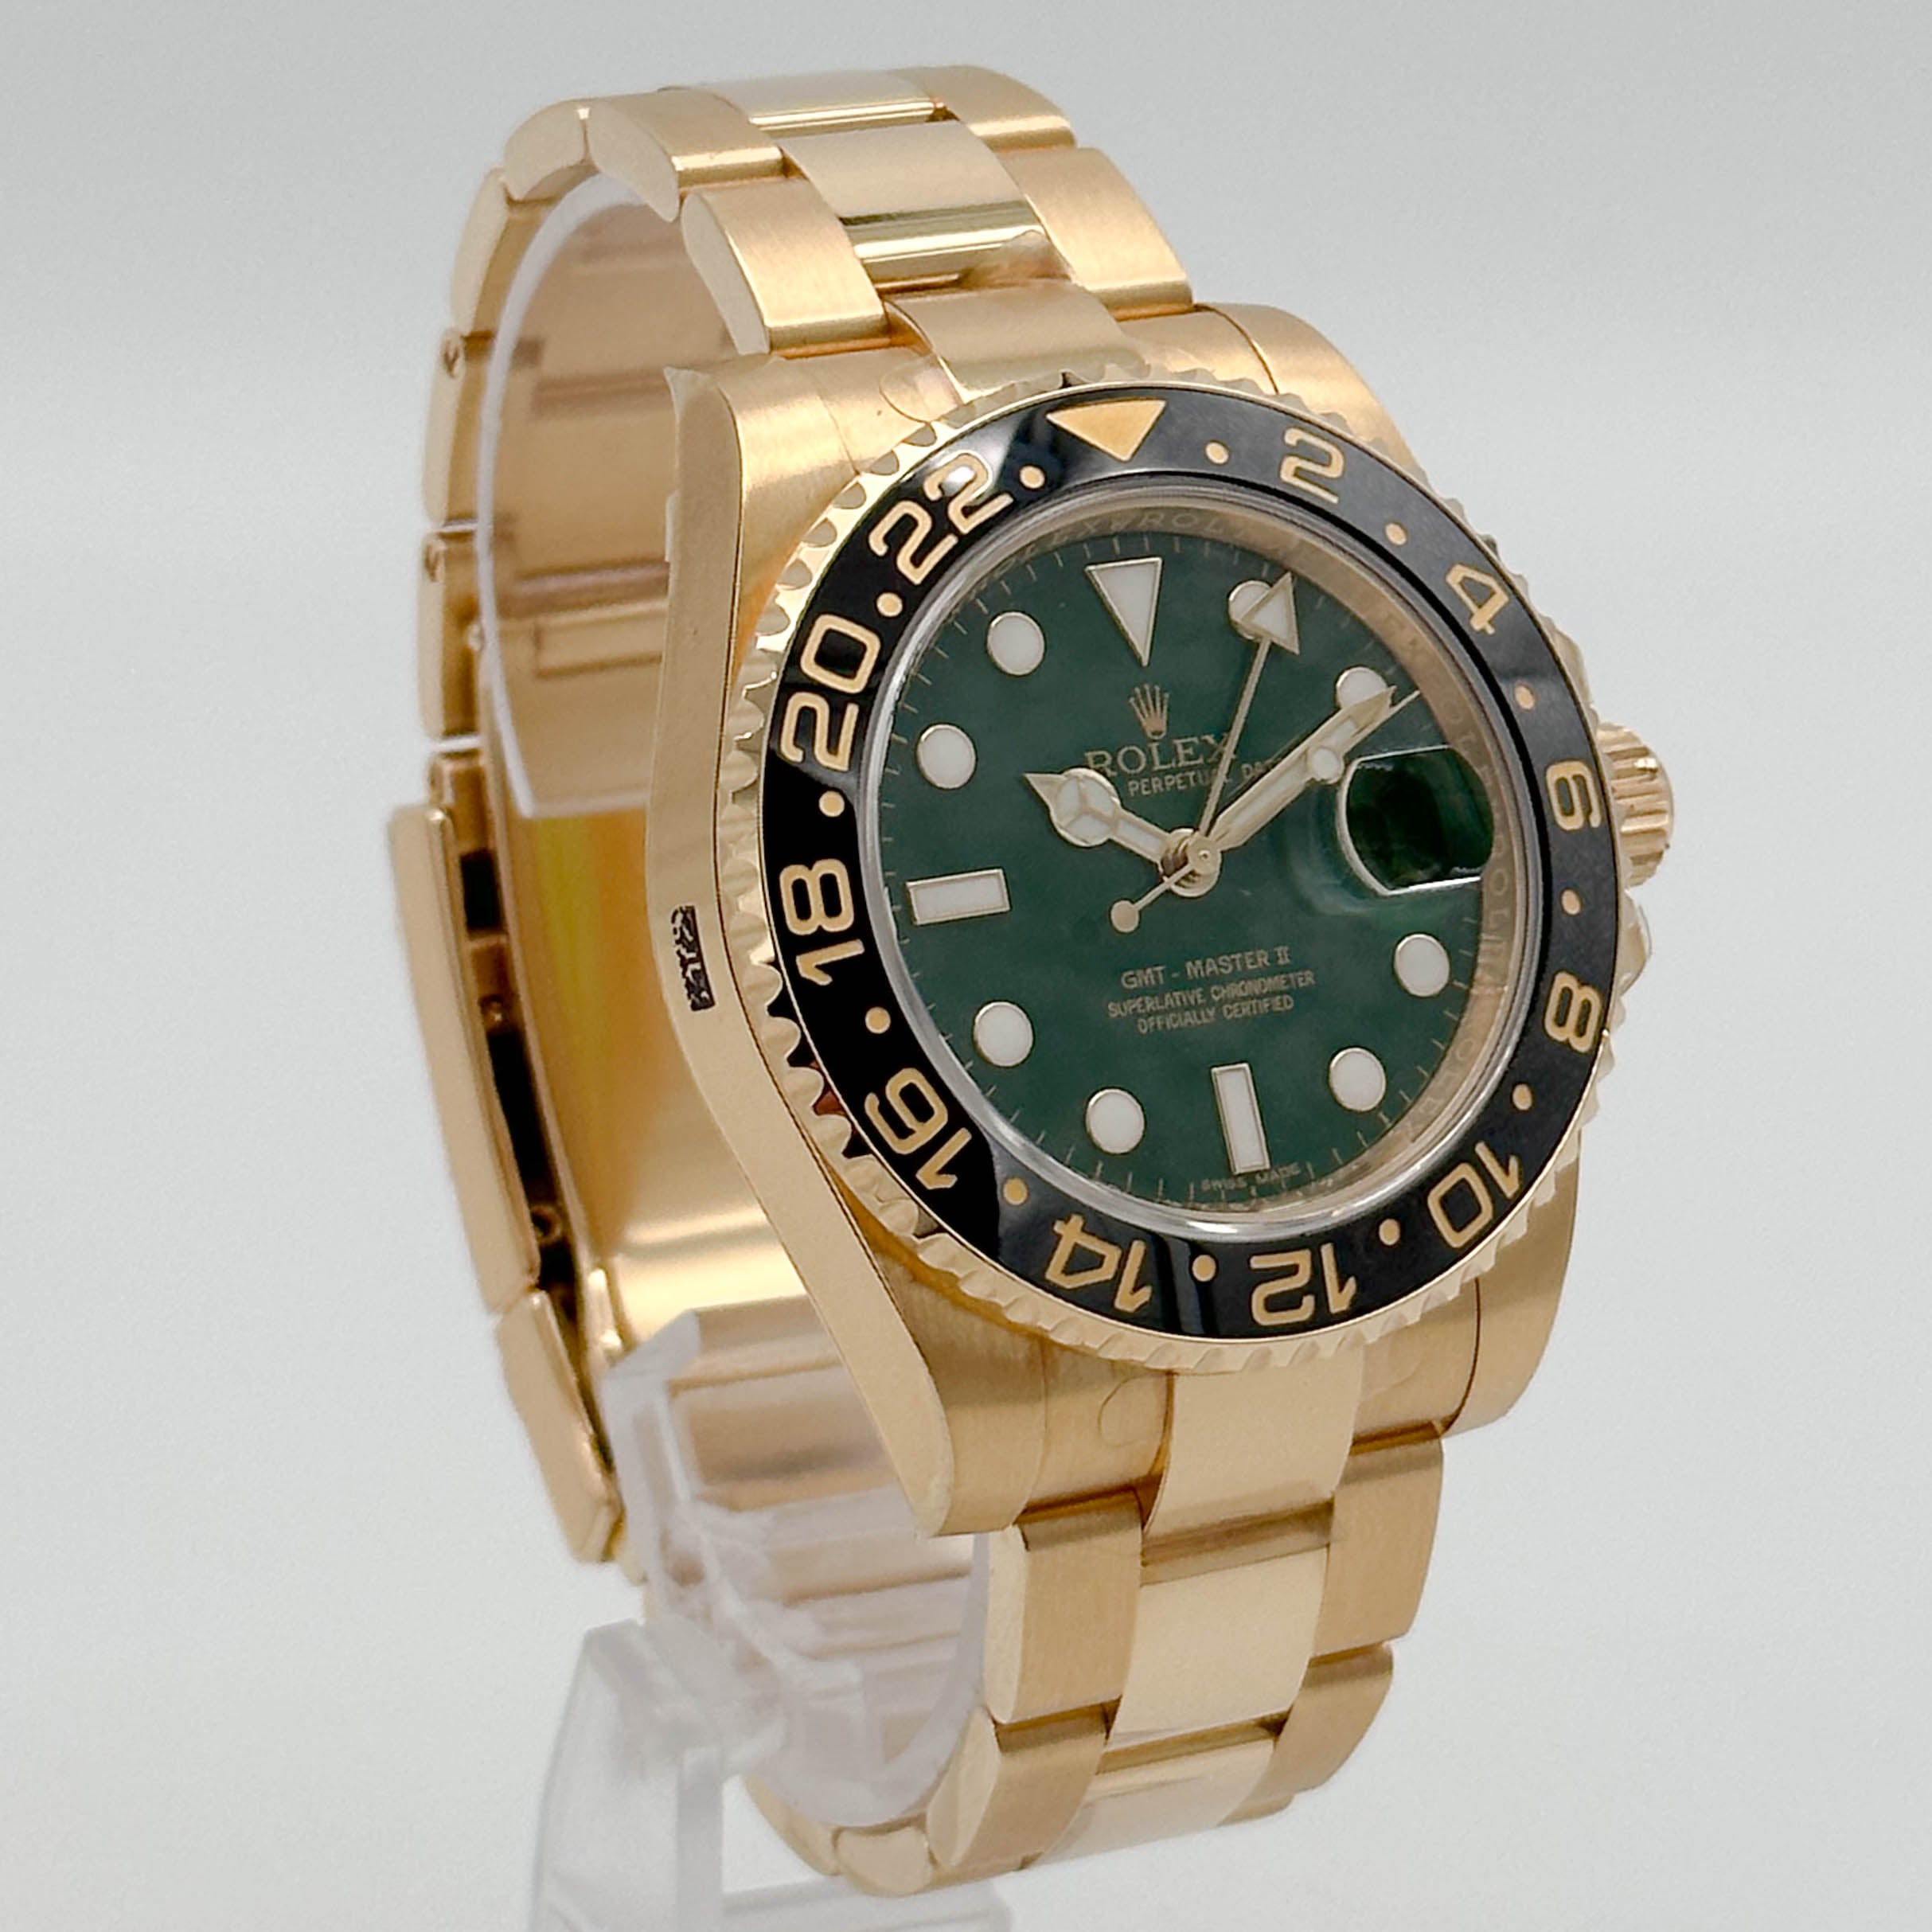 Rolex GMT Master II Gelbgold Green Dial Verklebt NOS 116718LN - 2010